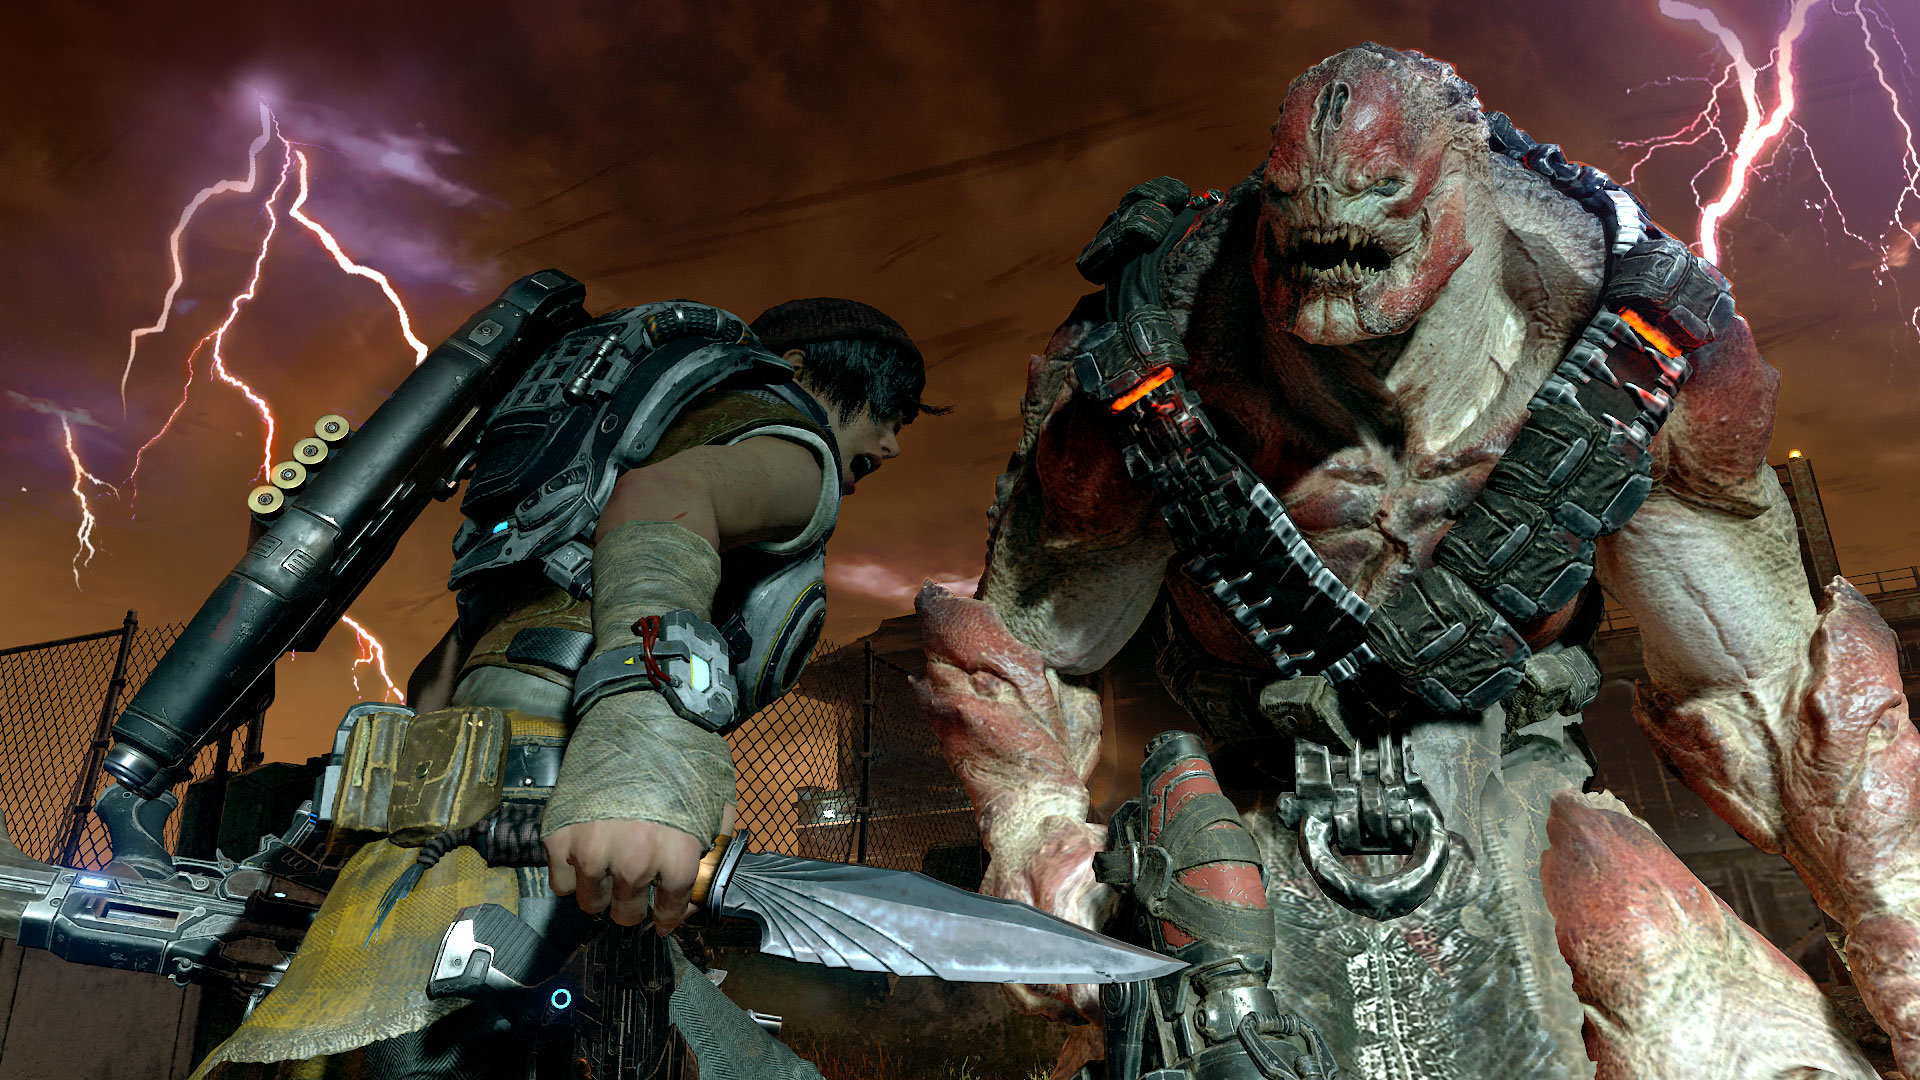 Immagine pubblicata in relazione al seguente contenuto: Microsoft Studios e The Coalition pubblicano il trailer di Gears of War 4 | Nome immagine: news24959_Gears-of-War-4-Screenshot_1.jpg